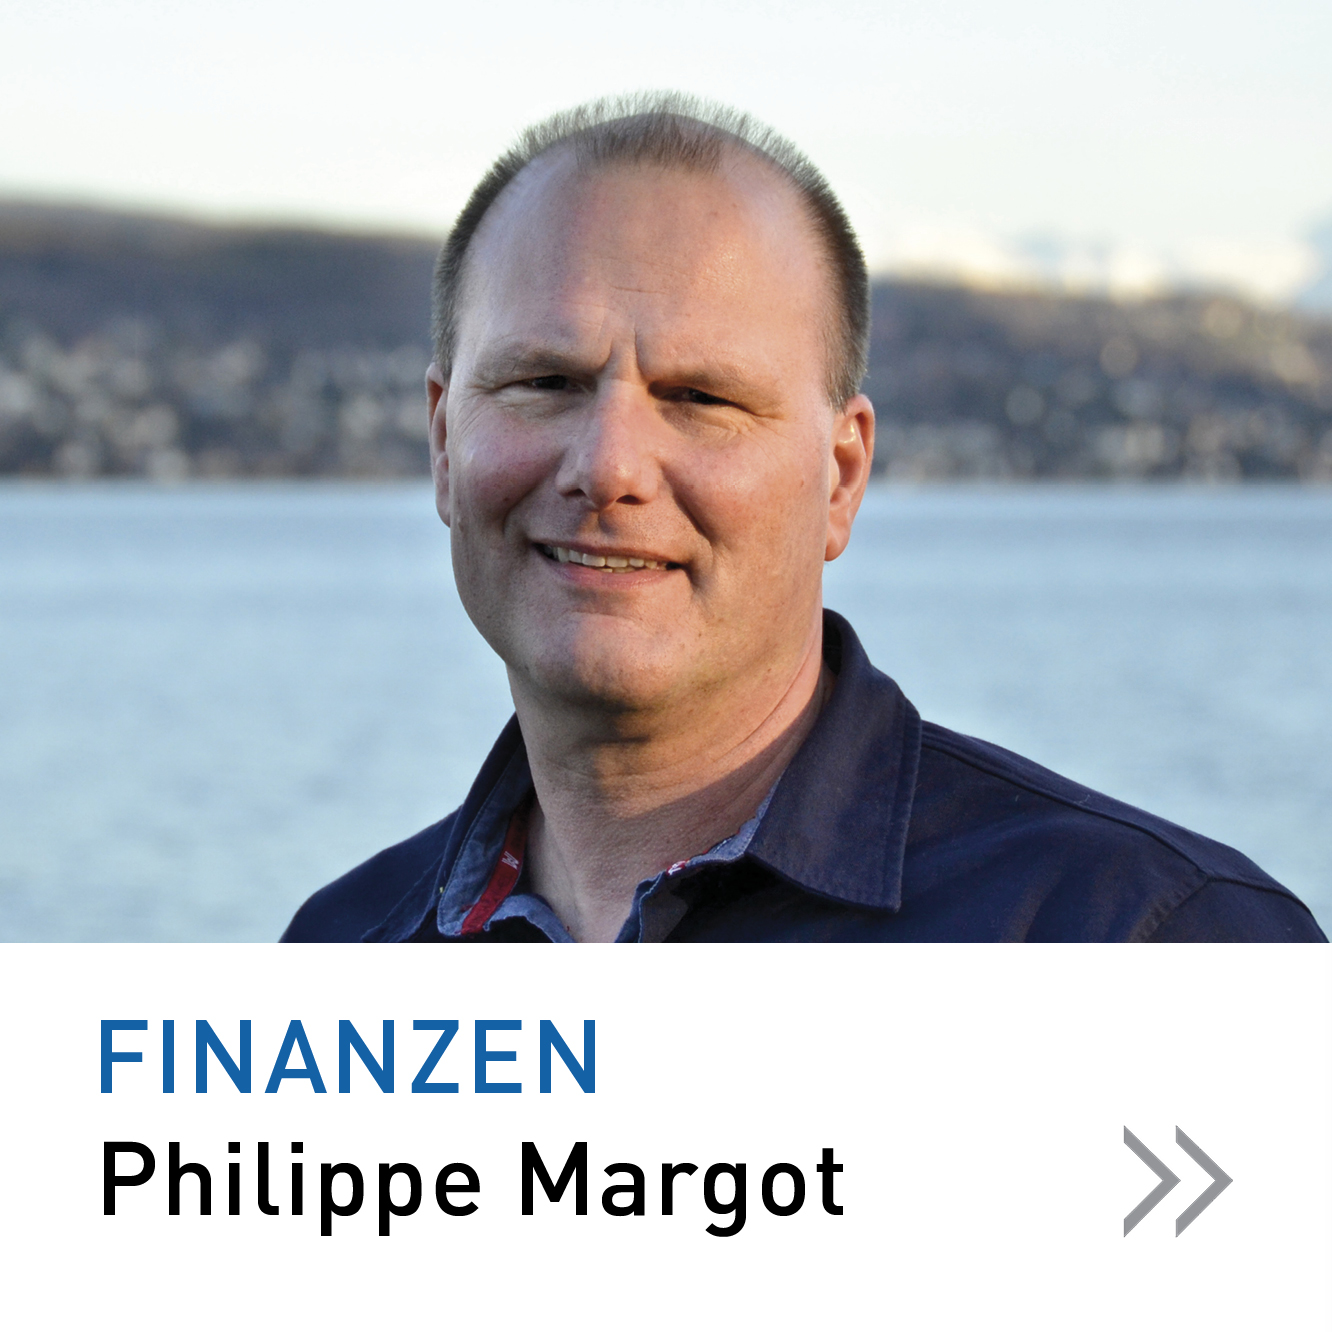 Finanzen Philippe Margot